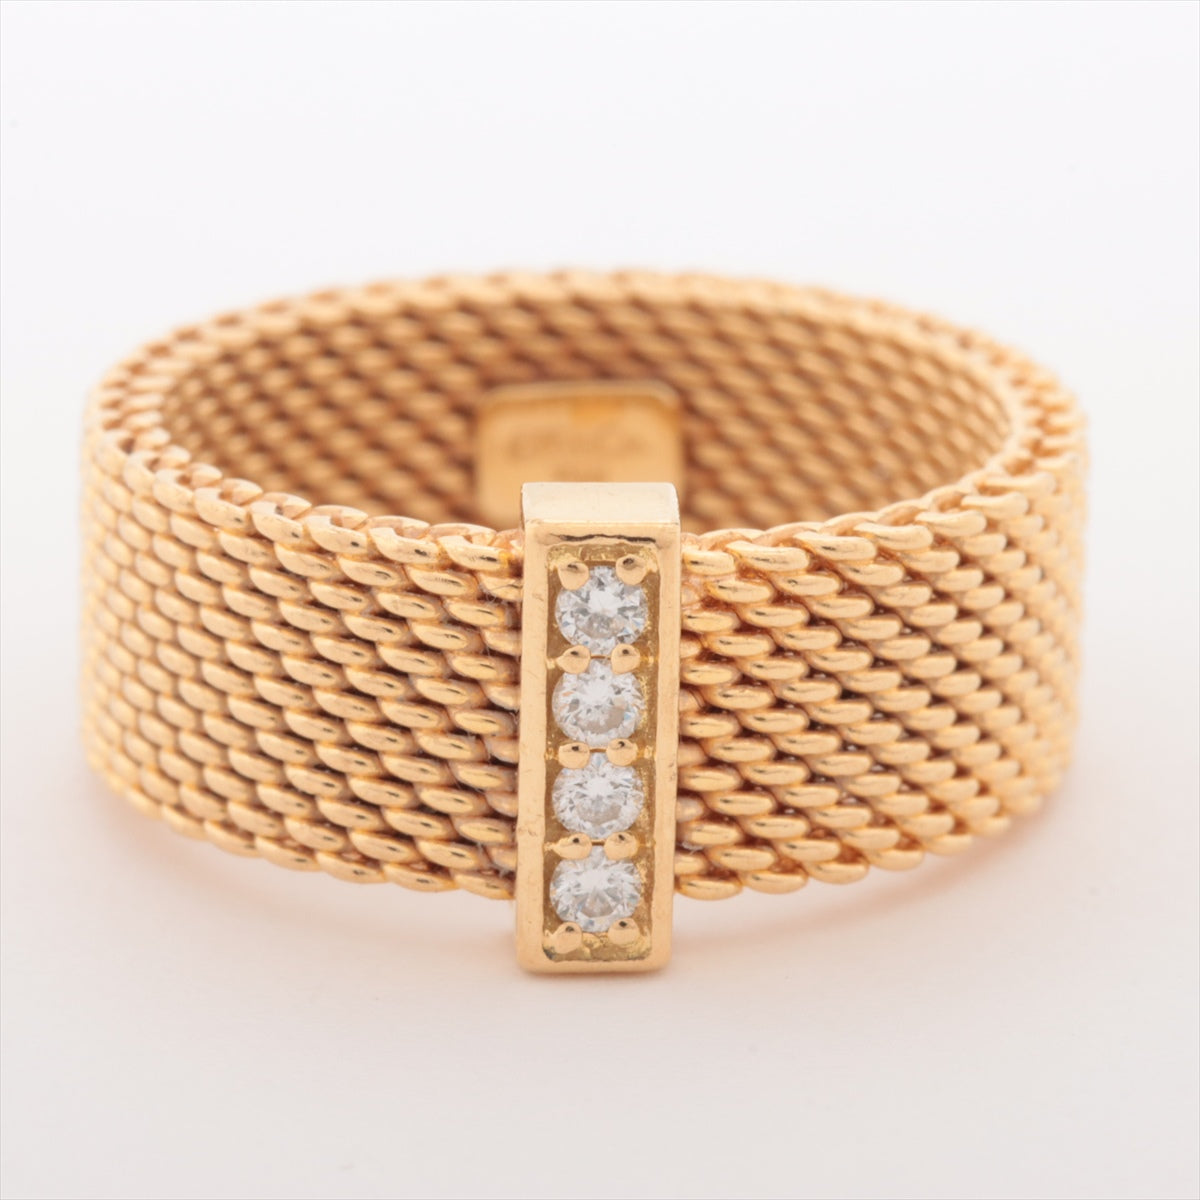 Tiffany Samasset Diamond Ring 750 (YG) 6.1g